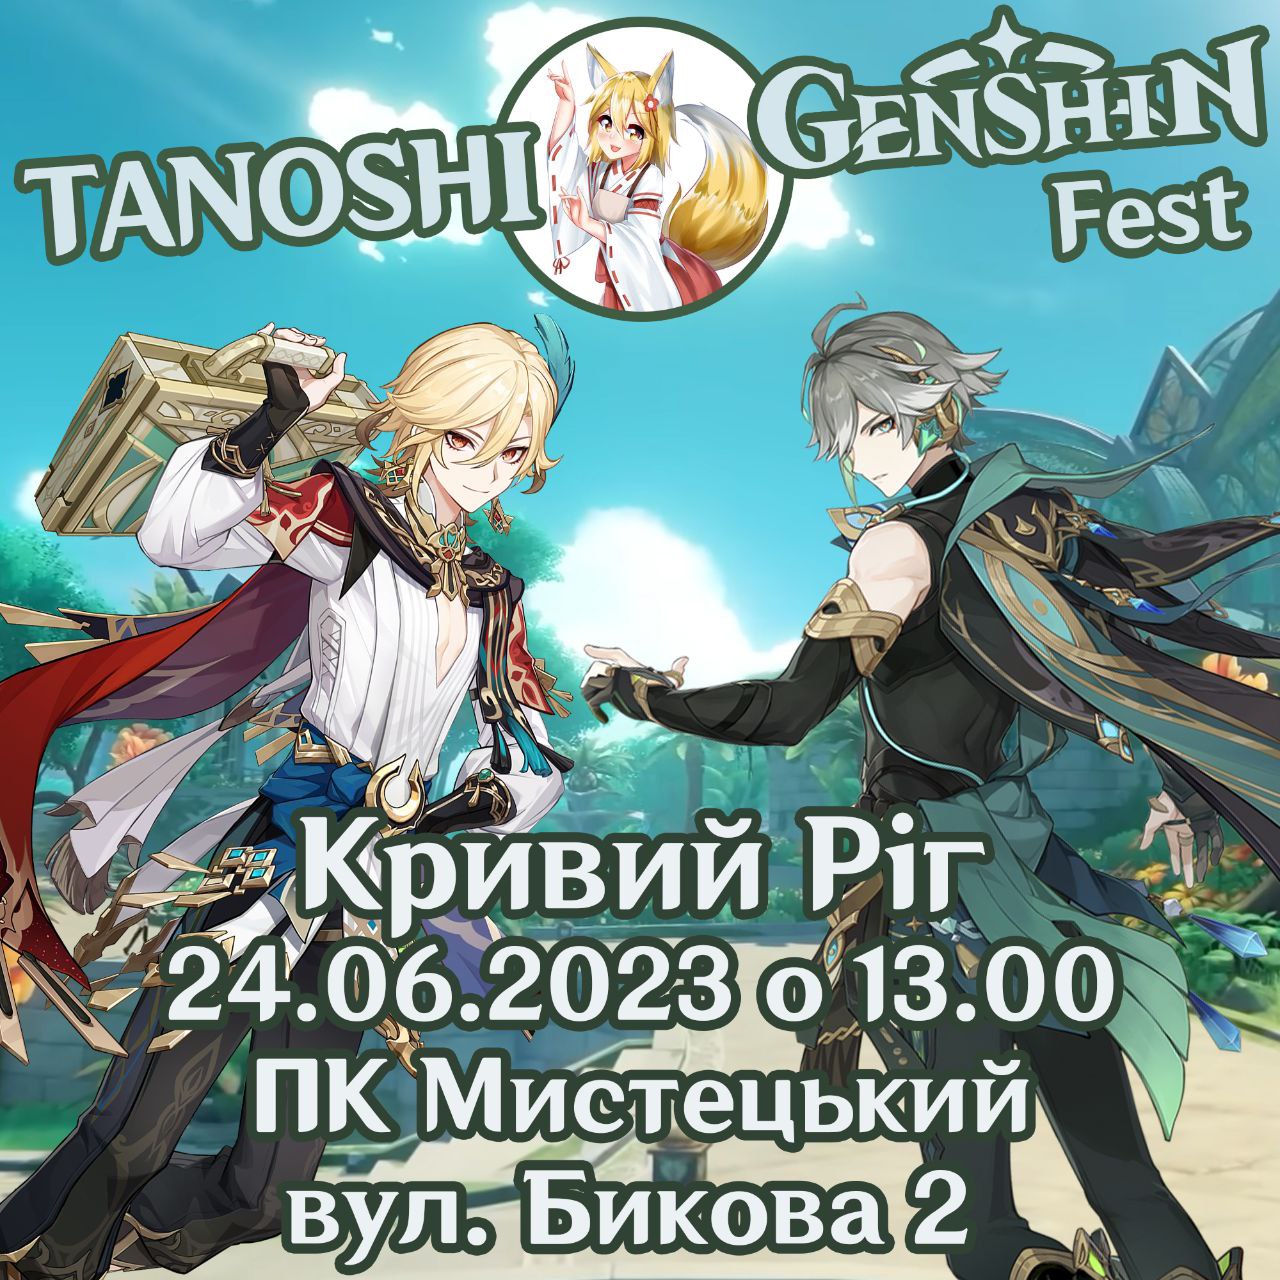 Genshin Fest у Кривому Розі від Tanoshi Party